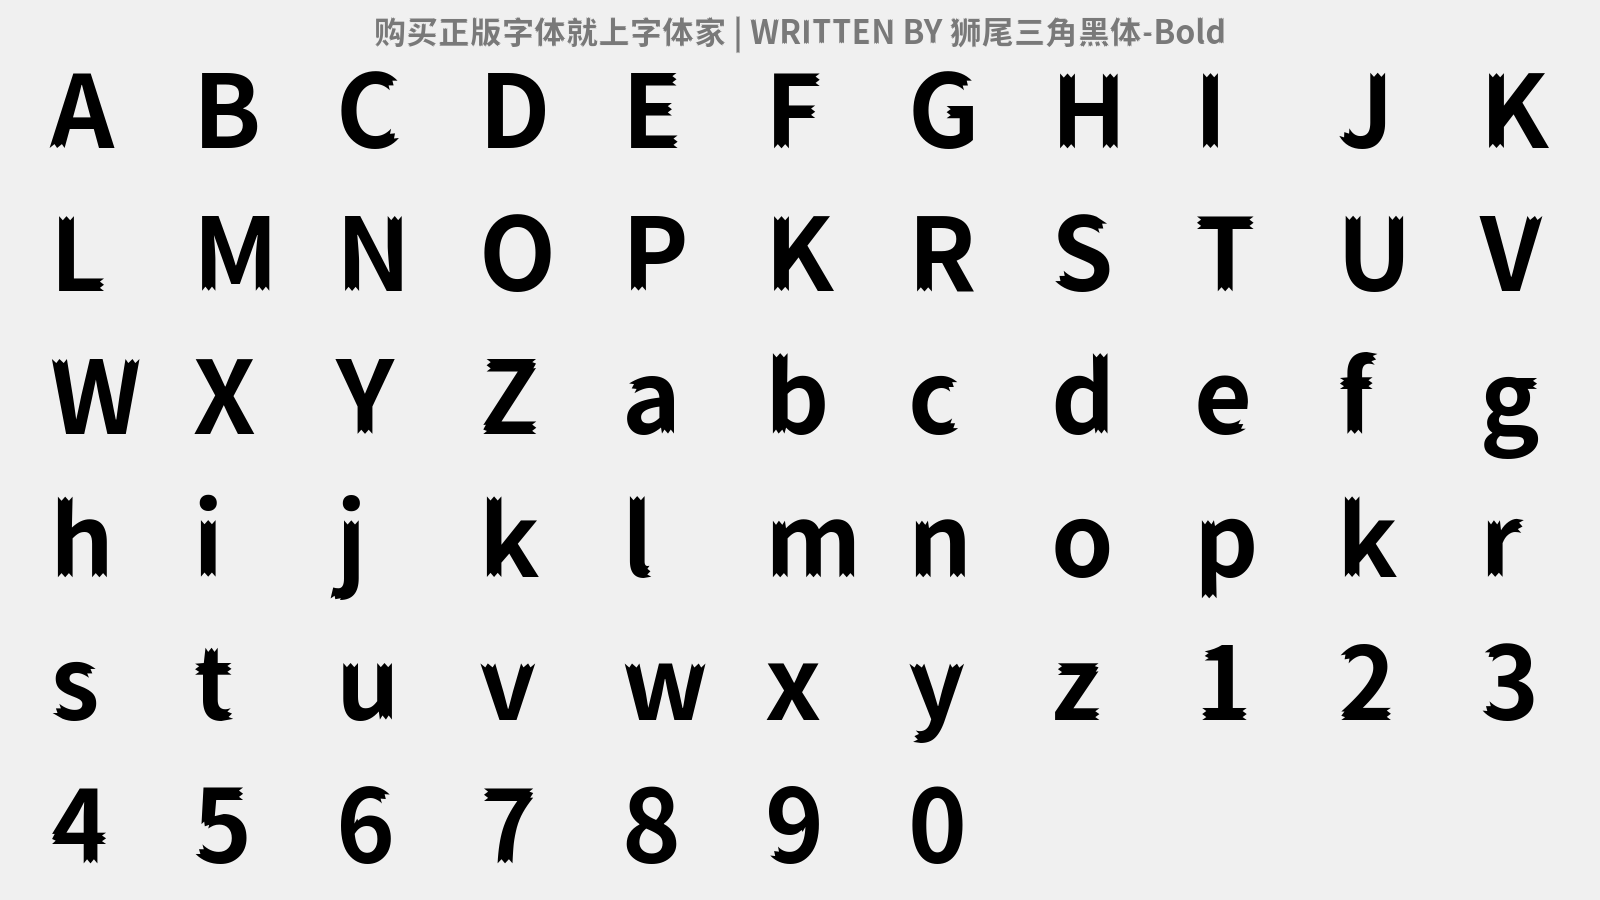 狮尾三角黑体-Bold - 大写字母/小写字母/数字